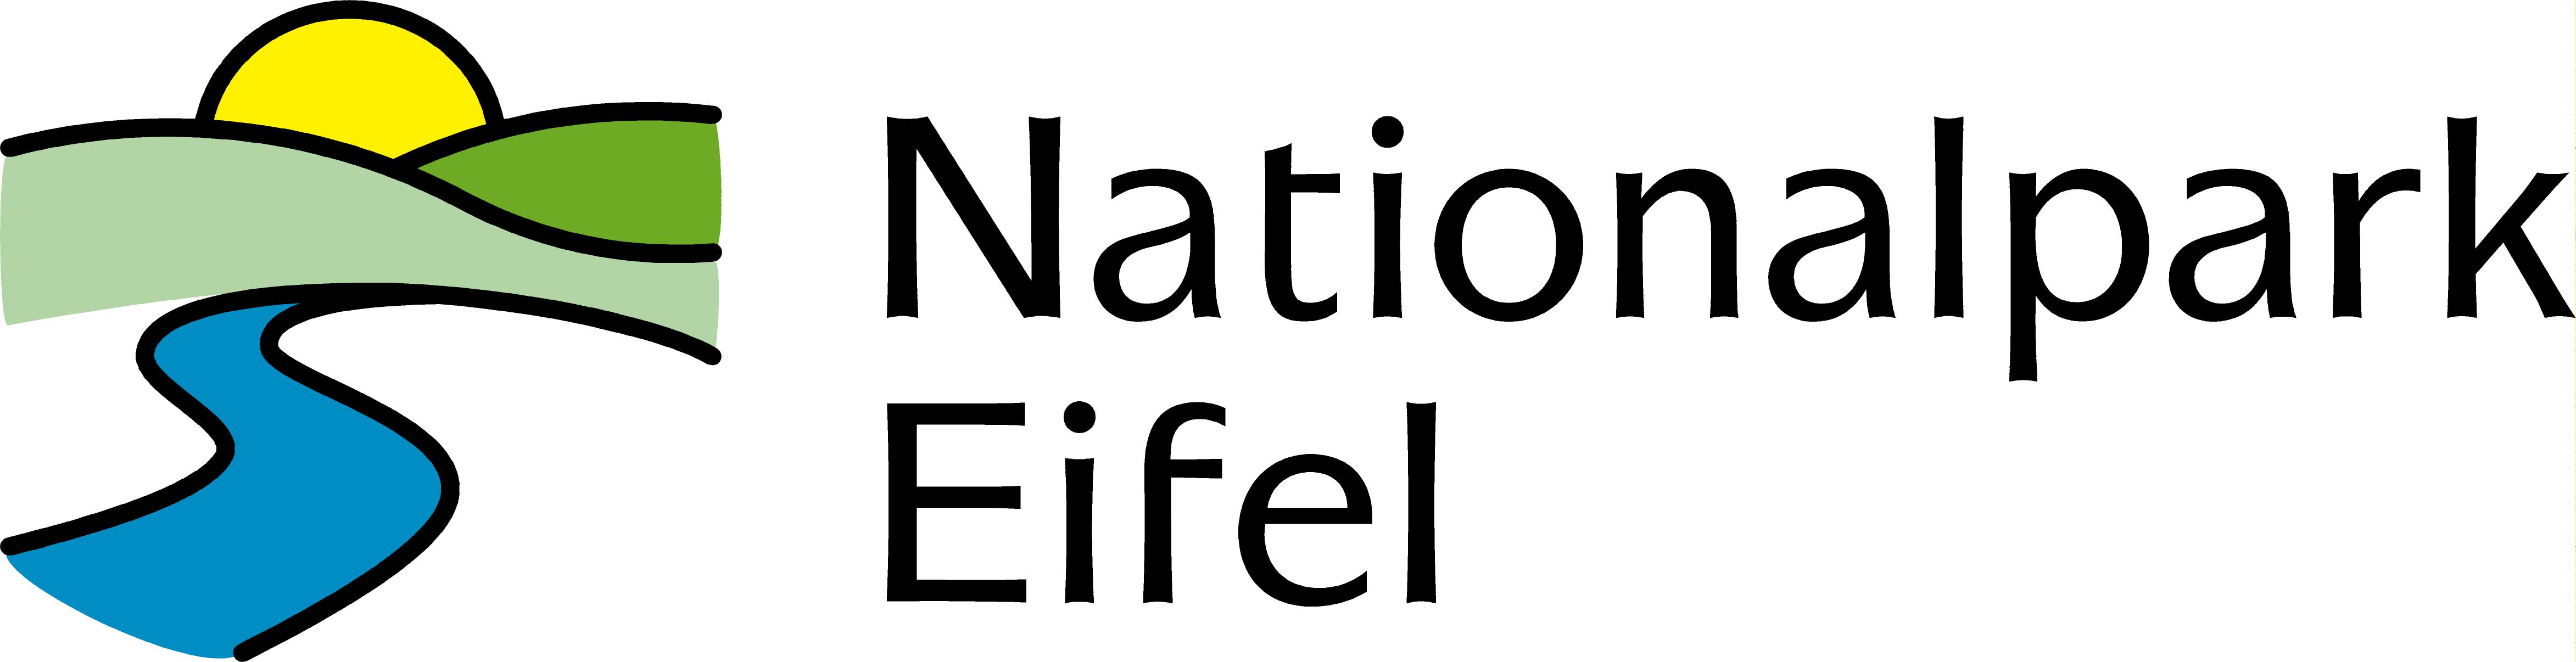 Eifel National Park, National Park